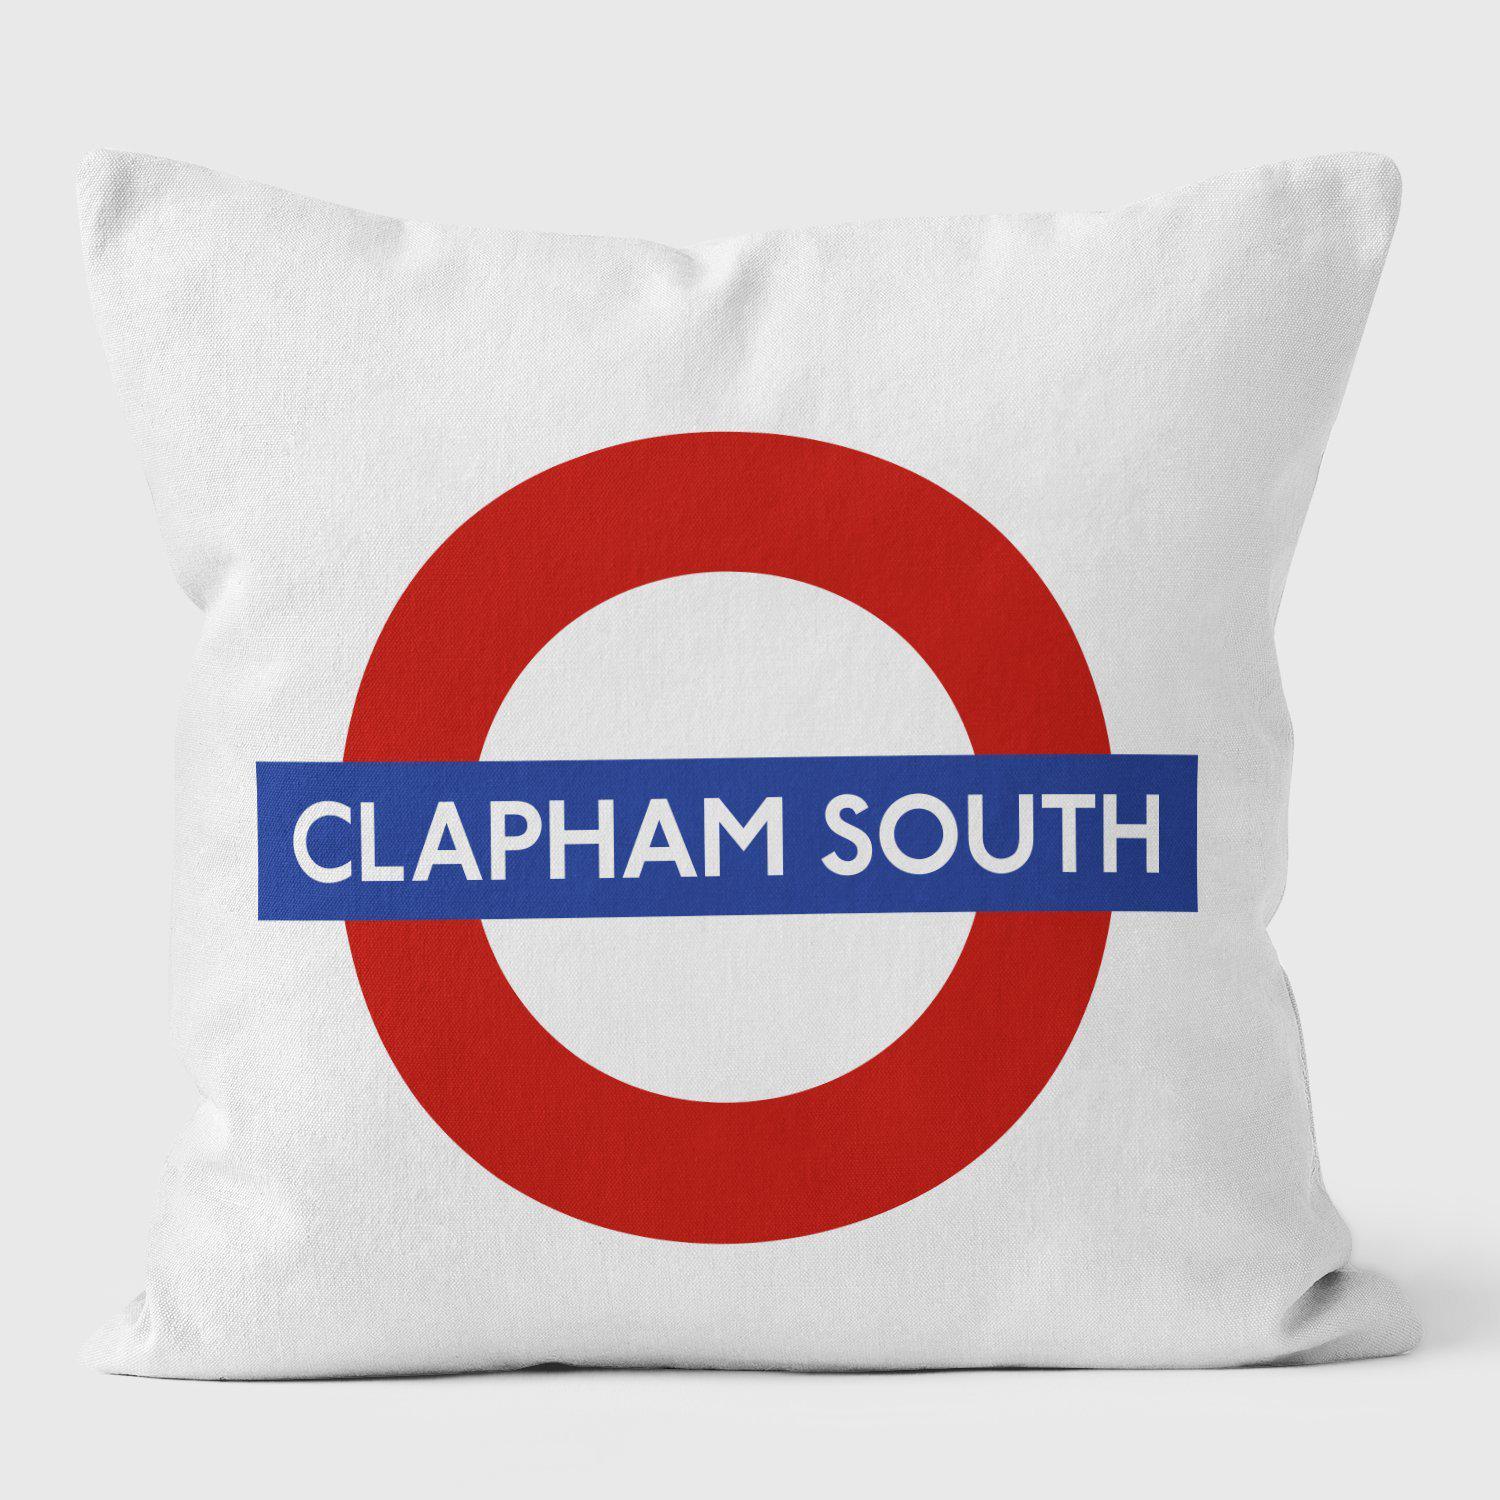 Clapham South London Underground Tube Station Roundel Cushion - Handmade Cushions UK - WeLoveCushions